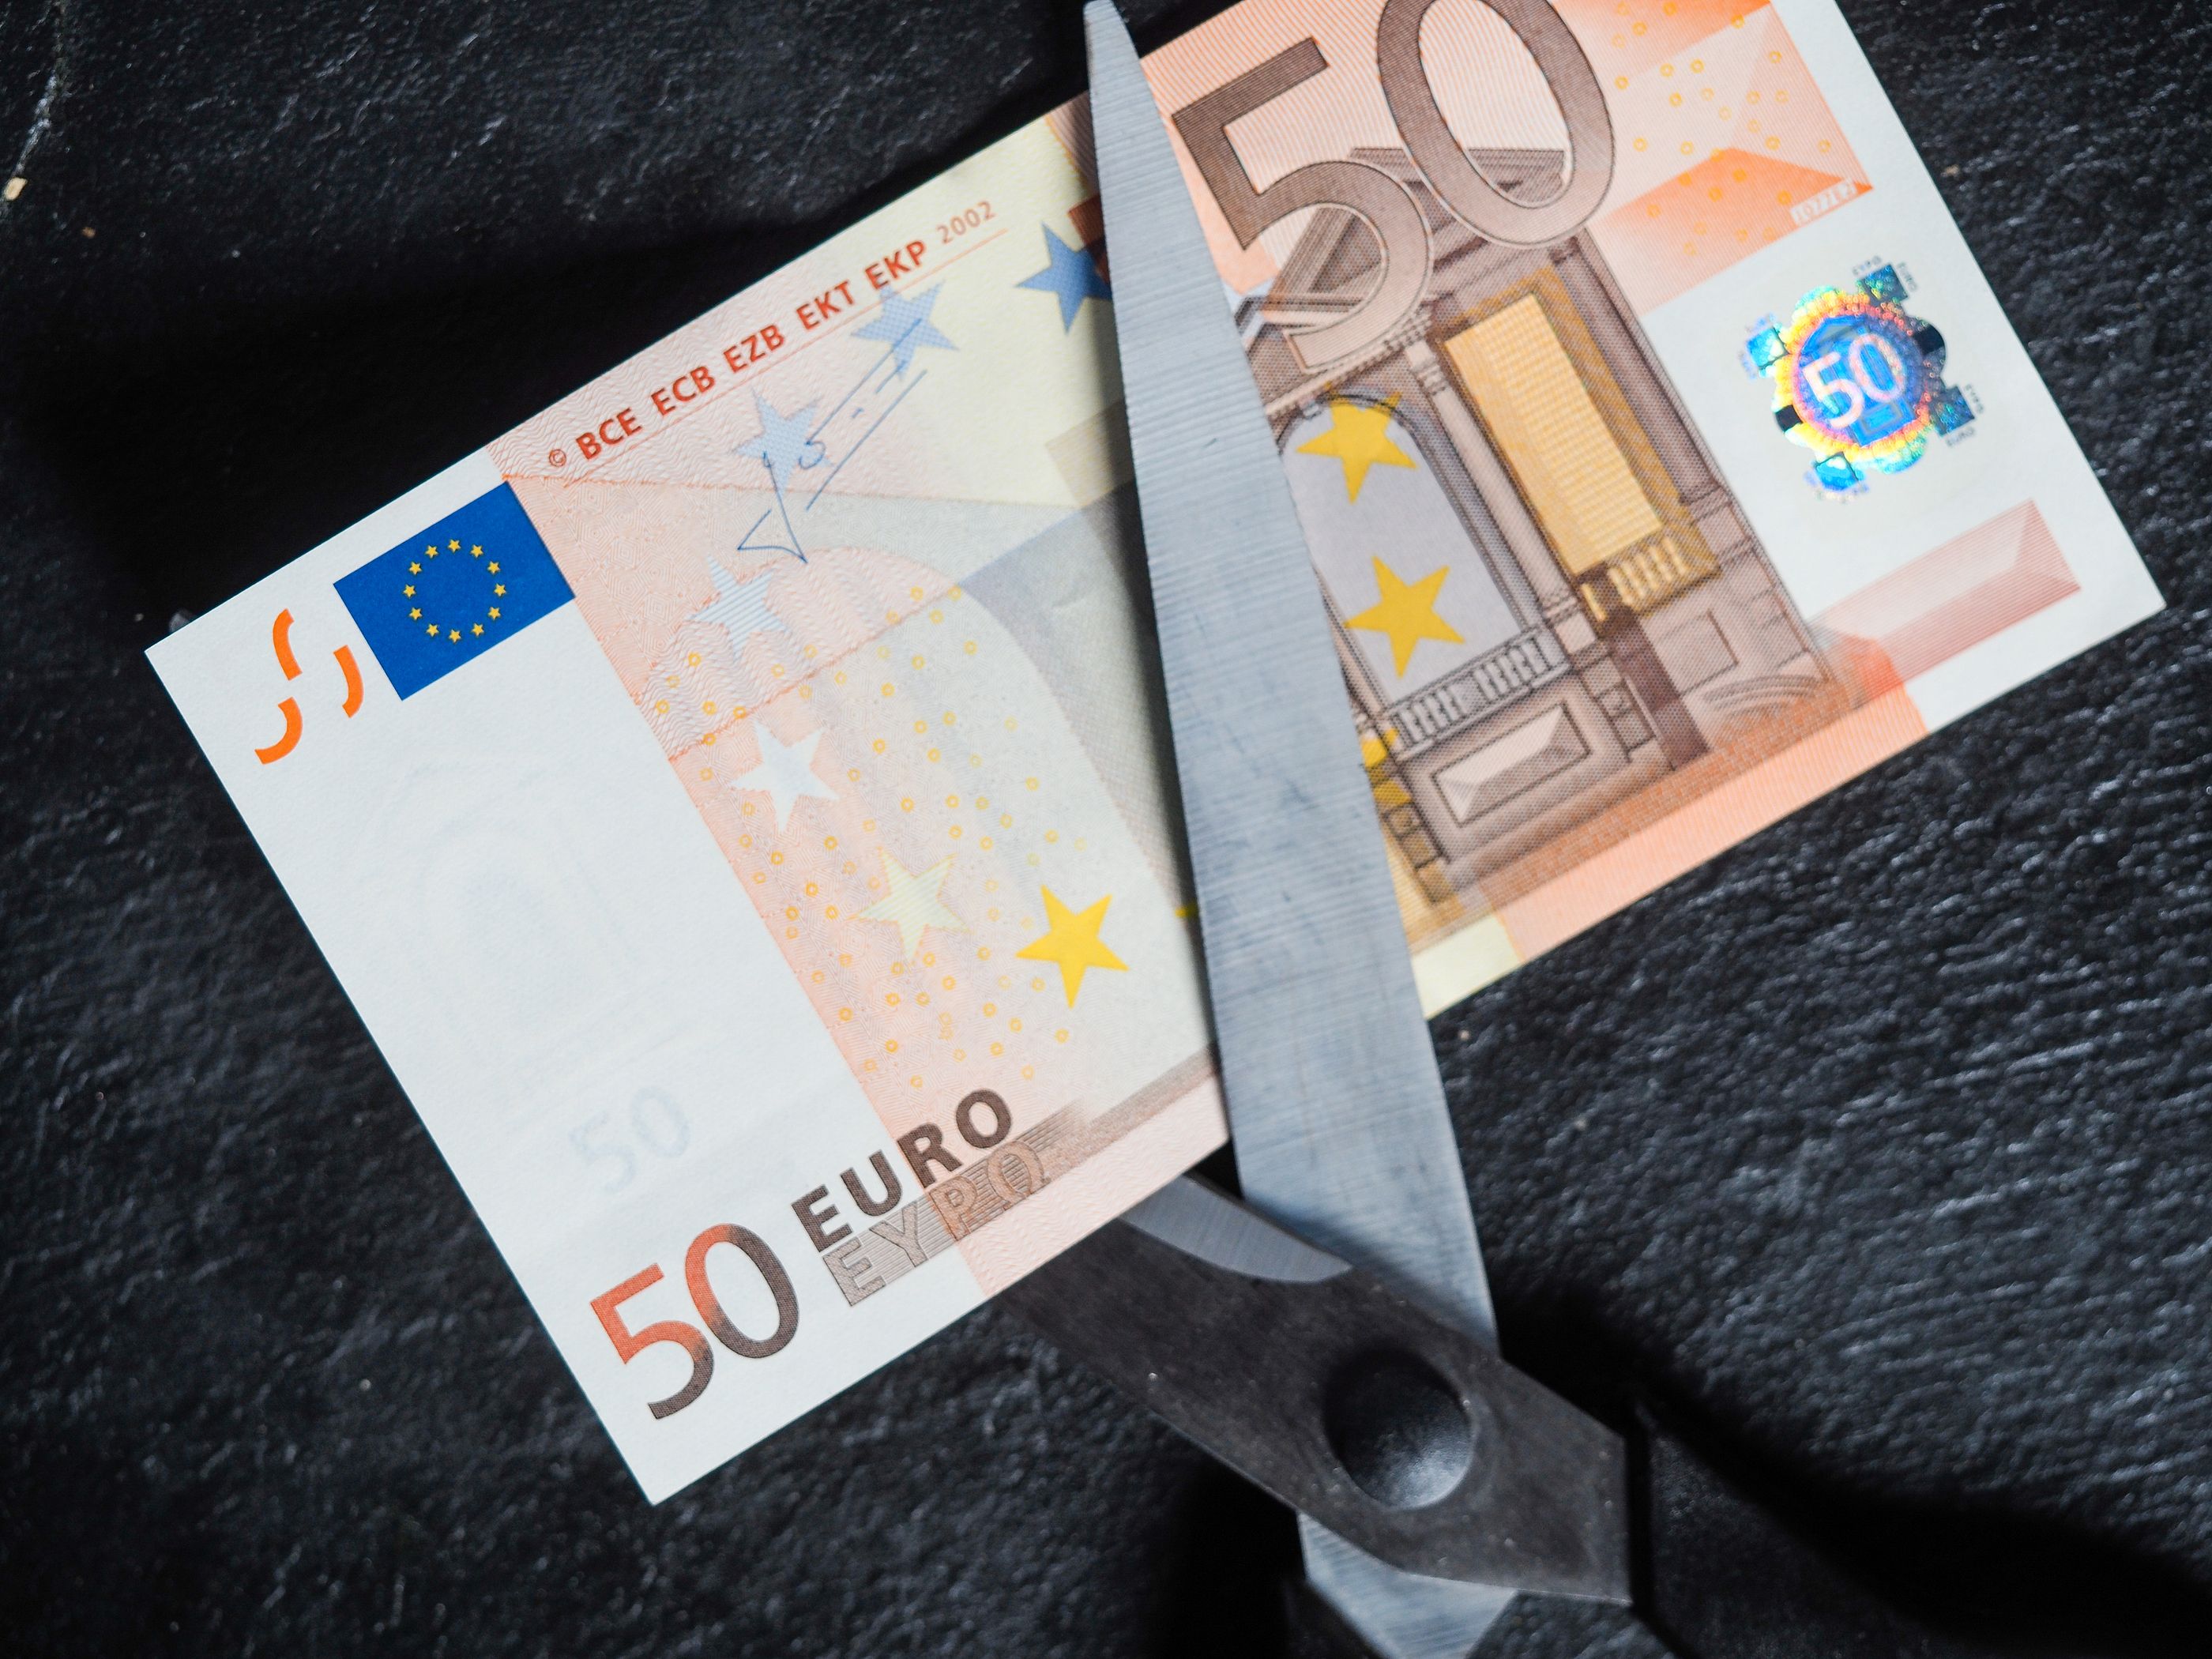 Otro golpe del Gobierno a los planes de pensiones: recorta la aportación máxima anual a 1.500 €